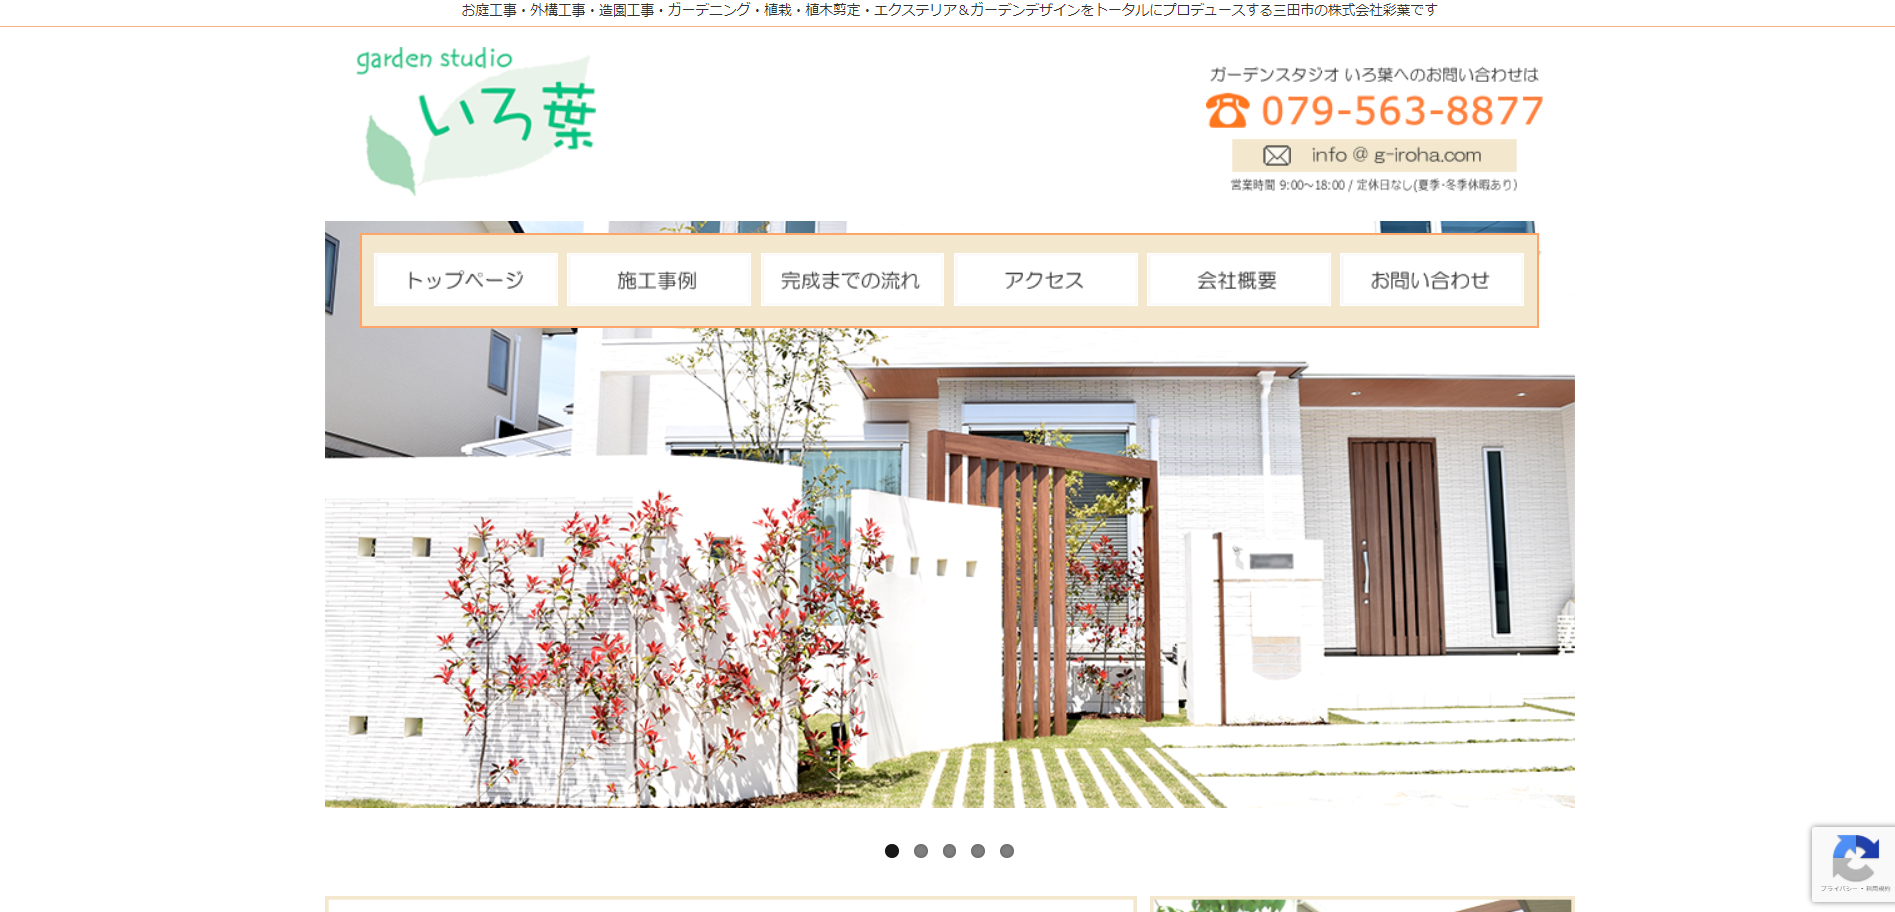 三田市で評判のおすすめ外構業者ランキング 第6位 ガーデンスタジオいろ葉